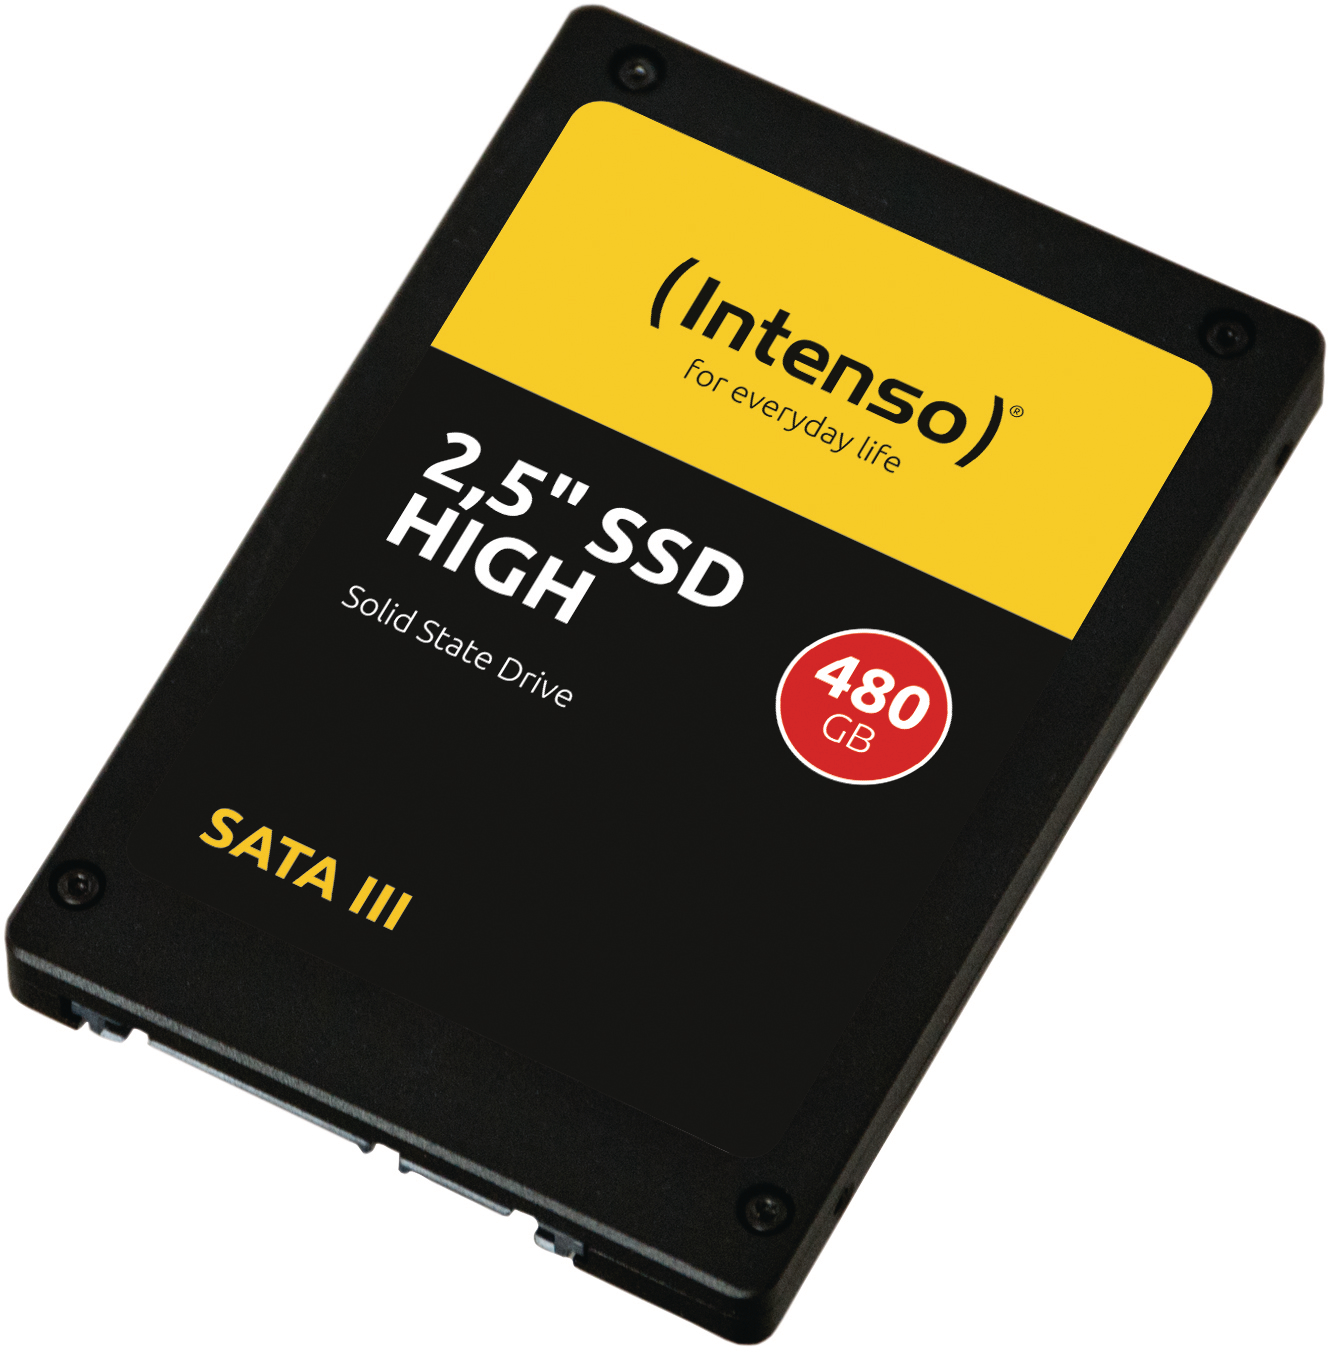 INTENSO SSD HIGH 480GB 3813450 Sata III